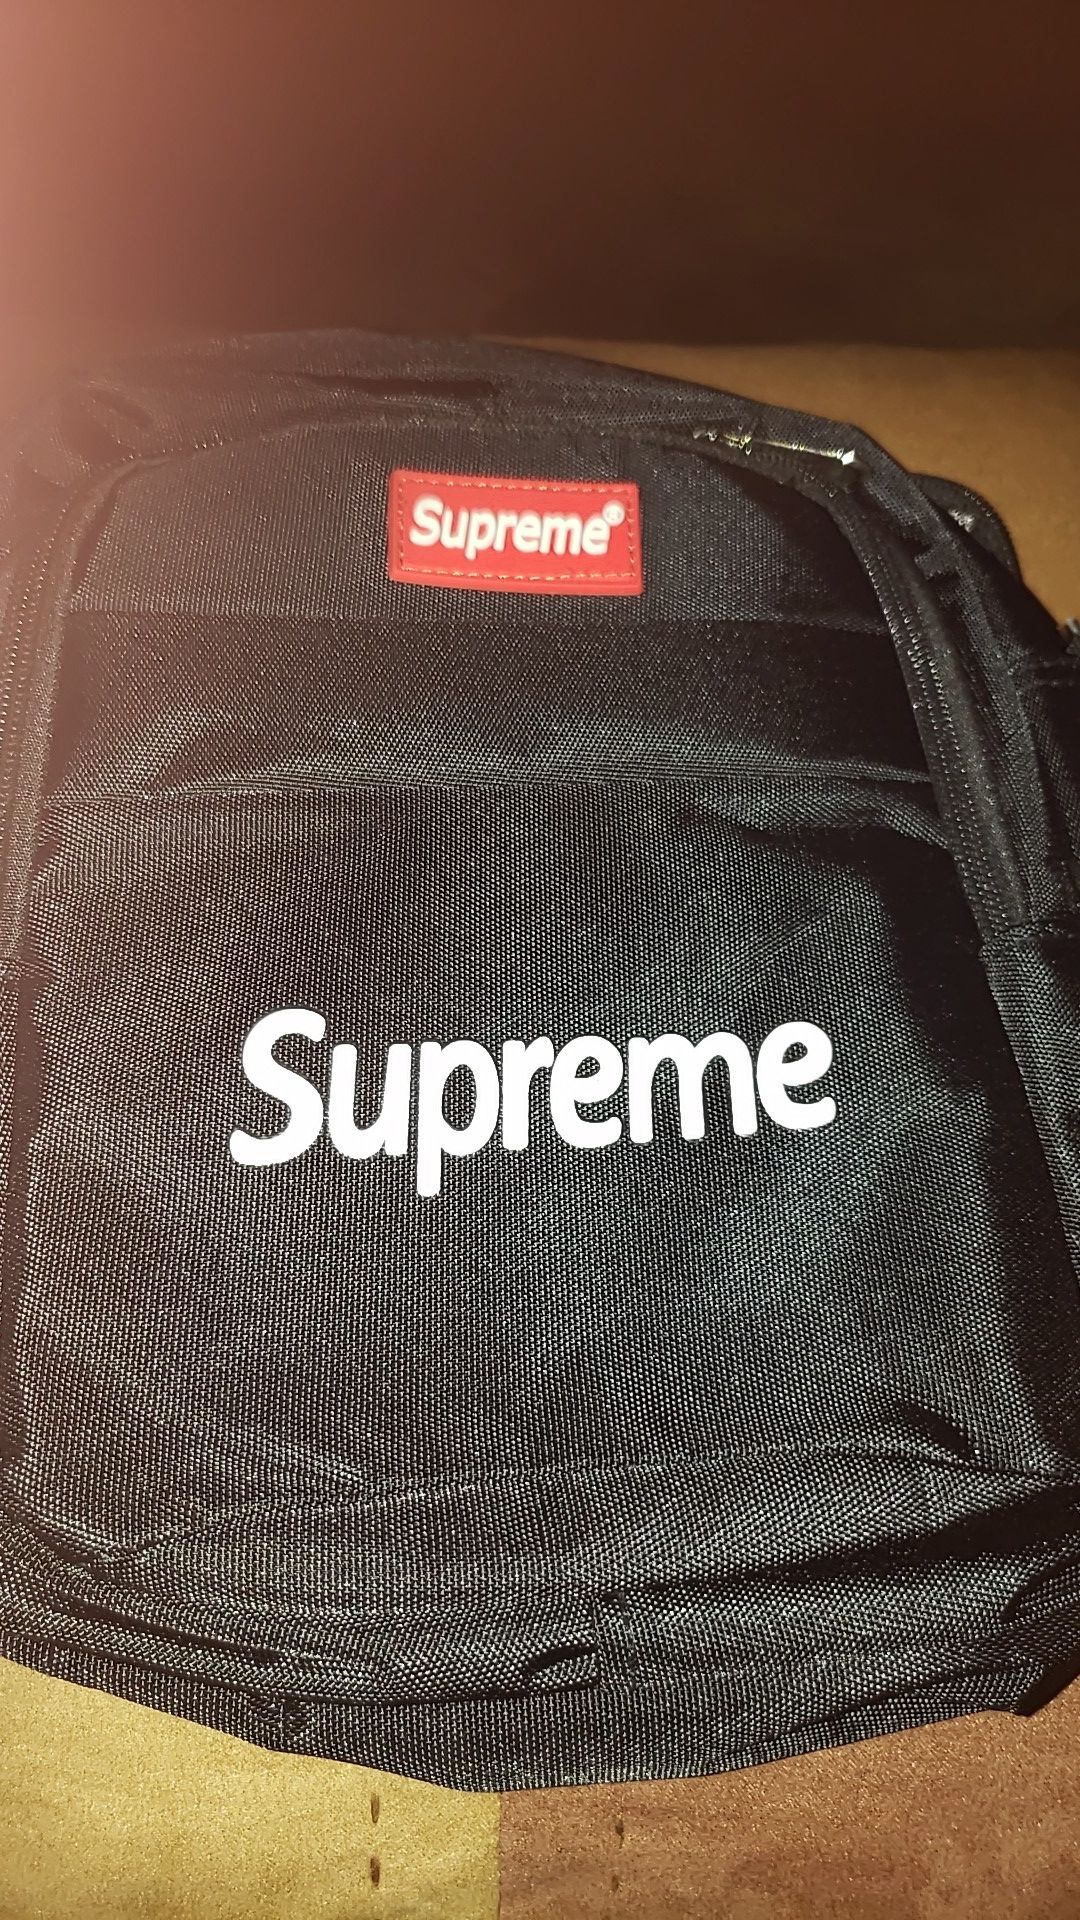 Brand New Supreme Messenger Bag...No tag